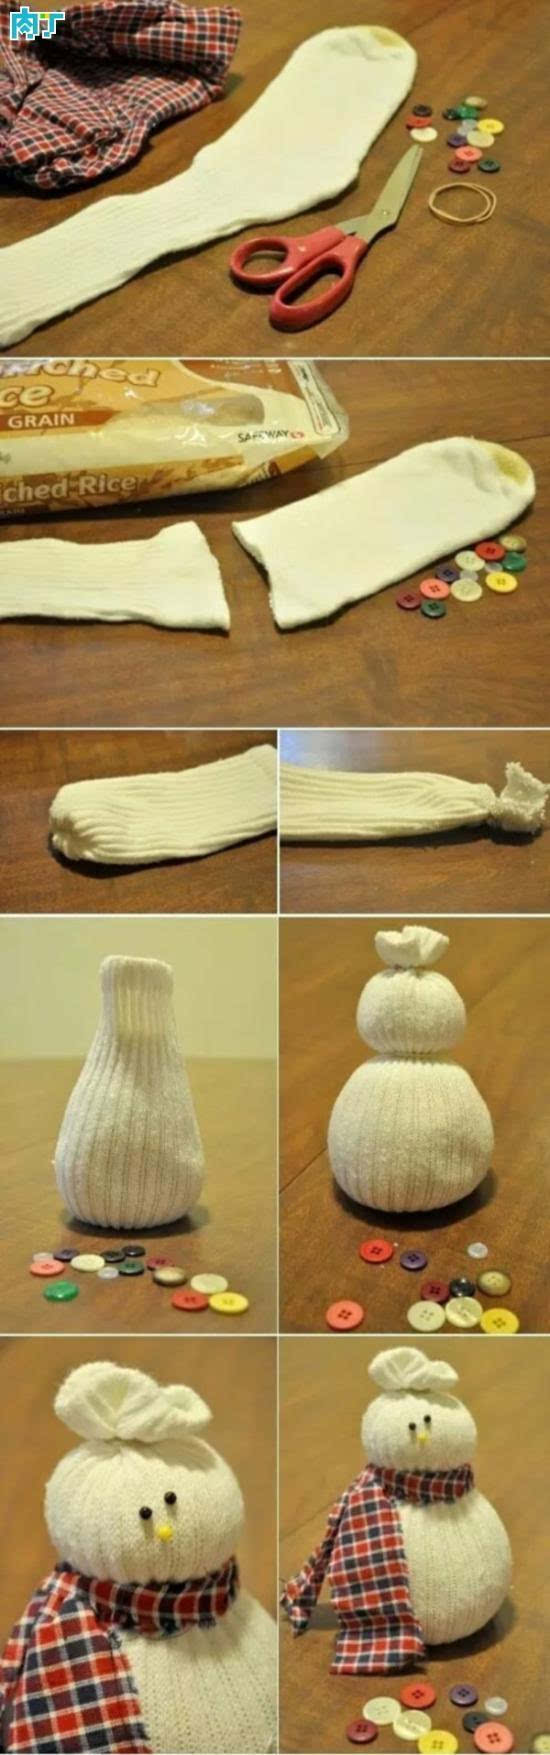 教你用白袜子制作可爱的袜子雪人布偶做法